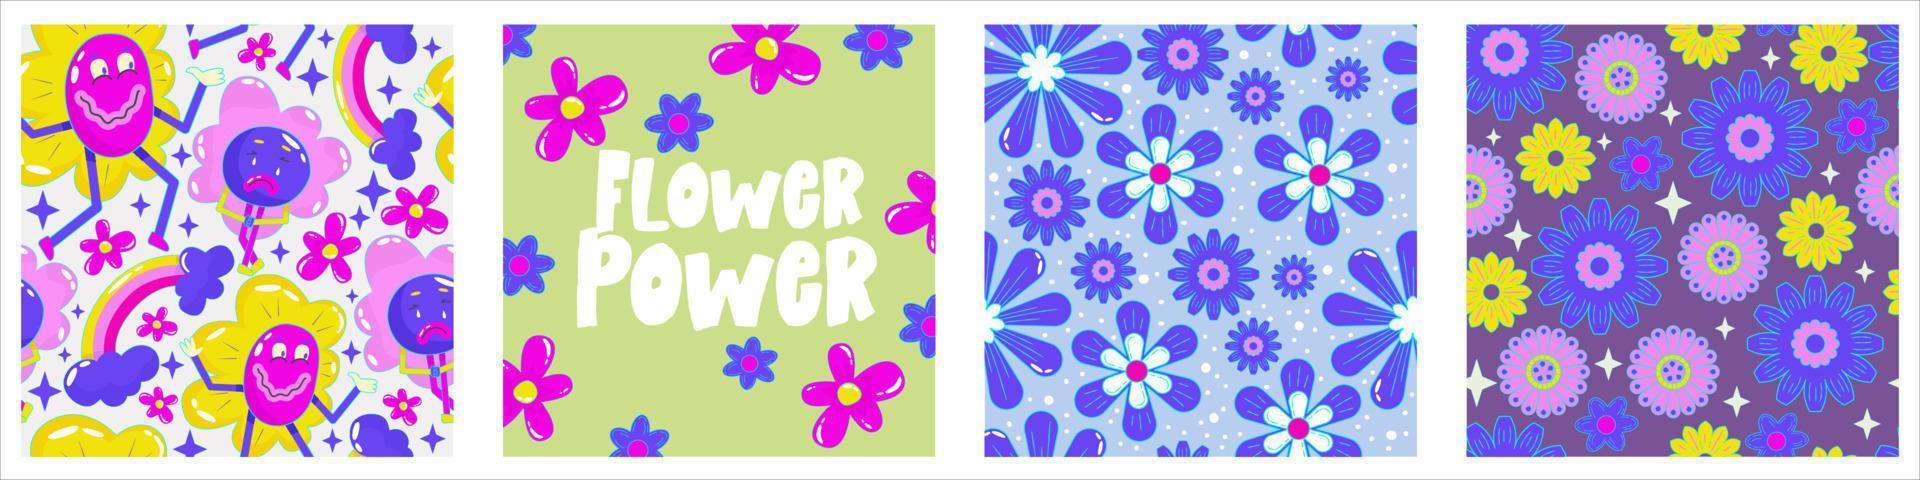 daisy flower power affisch set för print design. abstrakt trippy psykedeliskt mönster. Flower power. rolig vektorillustration. retro 1990 affisch för tshirtdesign. vektor